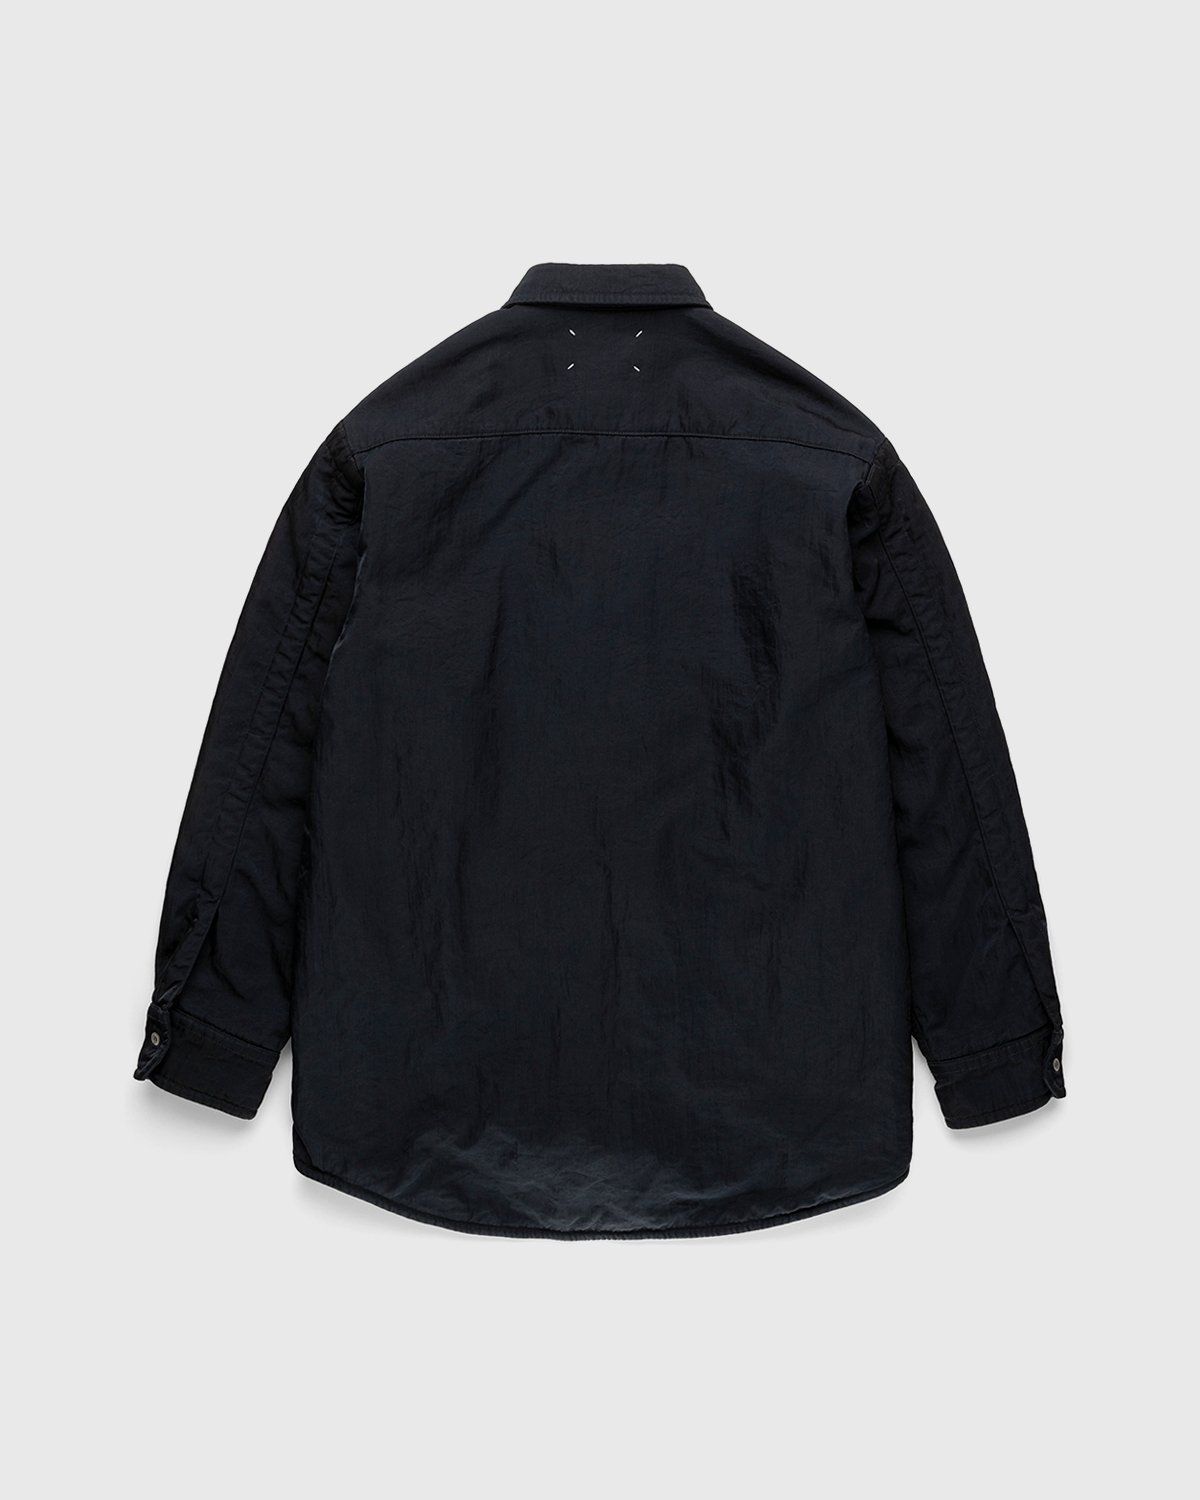 Maison Margiela – Oversized Nylon Jacket Navy - Longsleeve Shirts - Black - Image 2